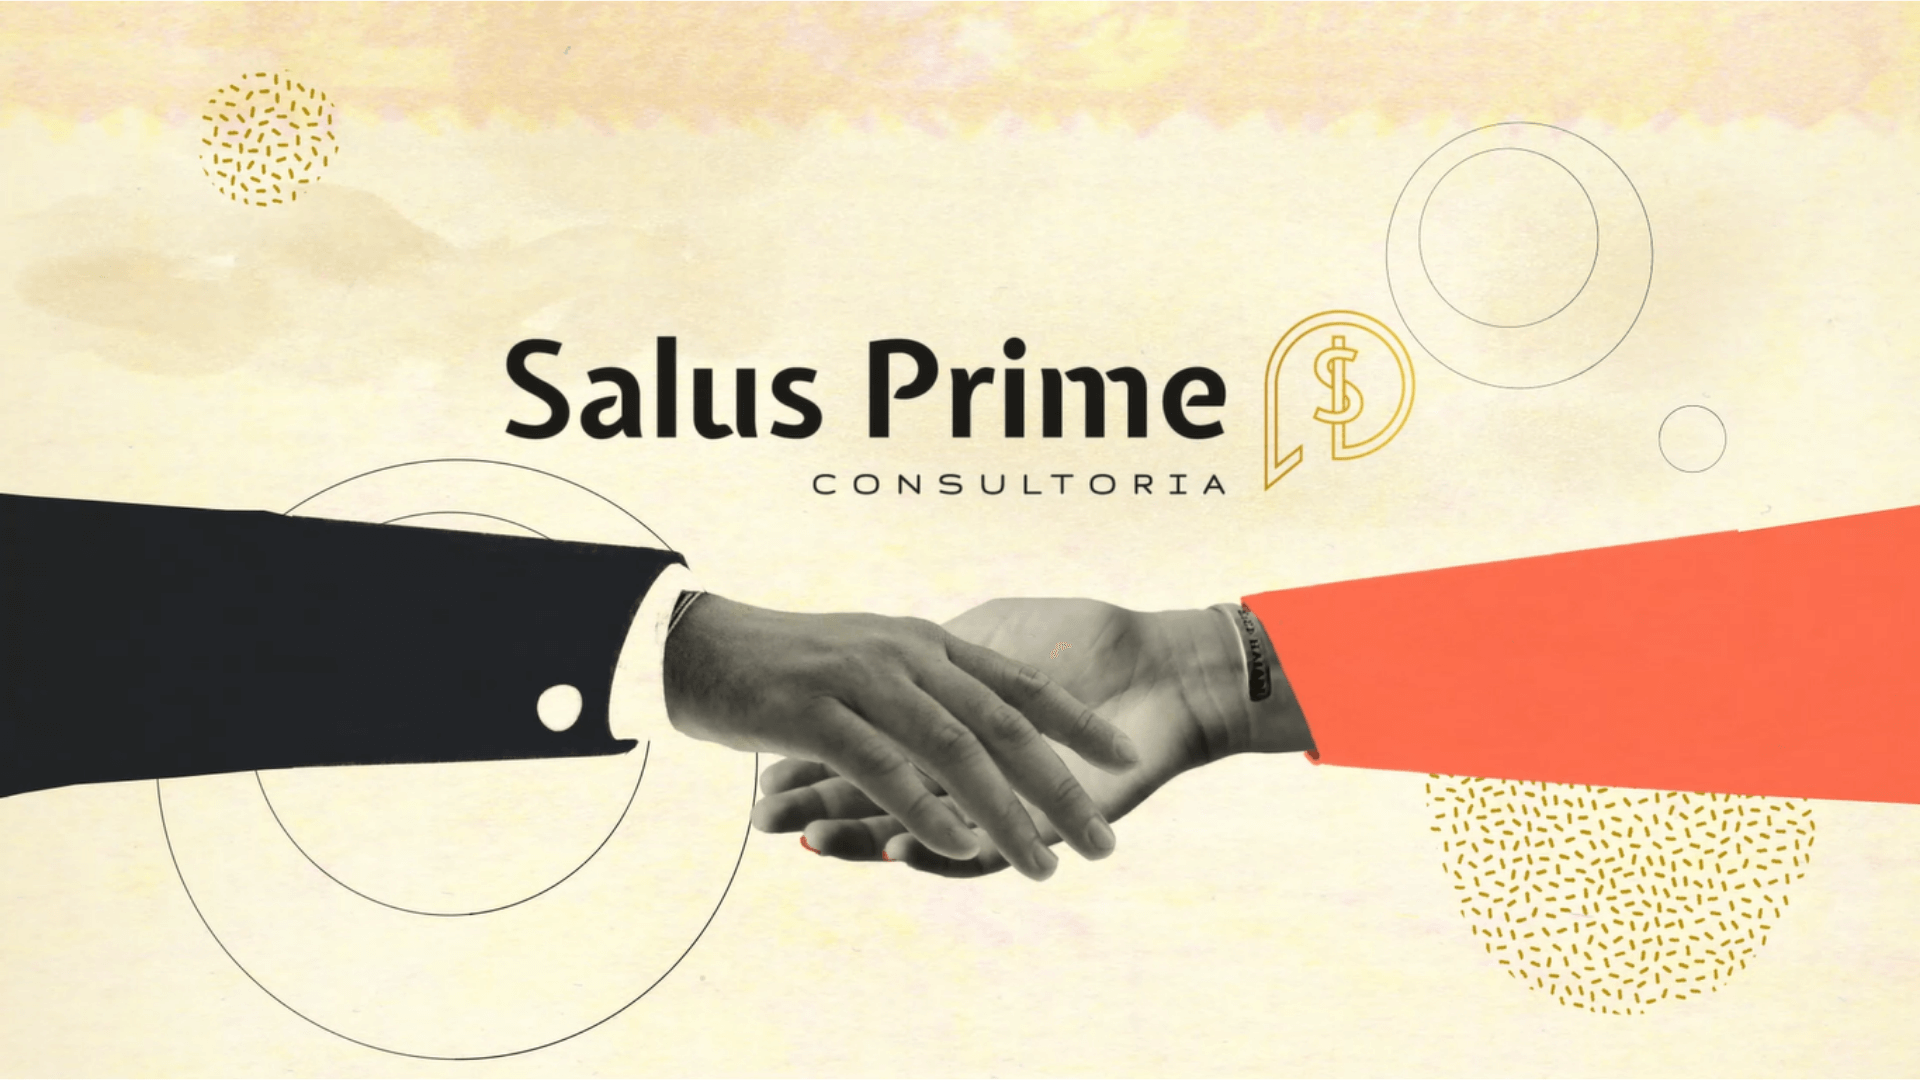 Salus Prime